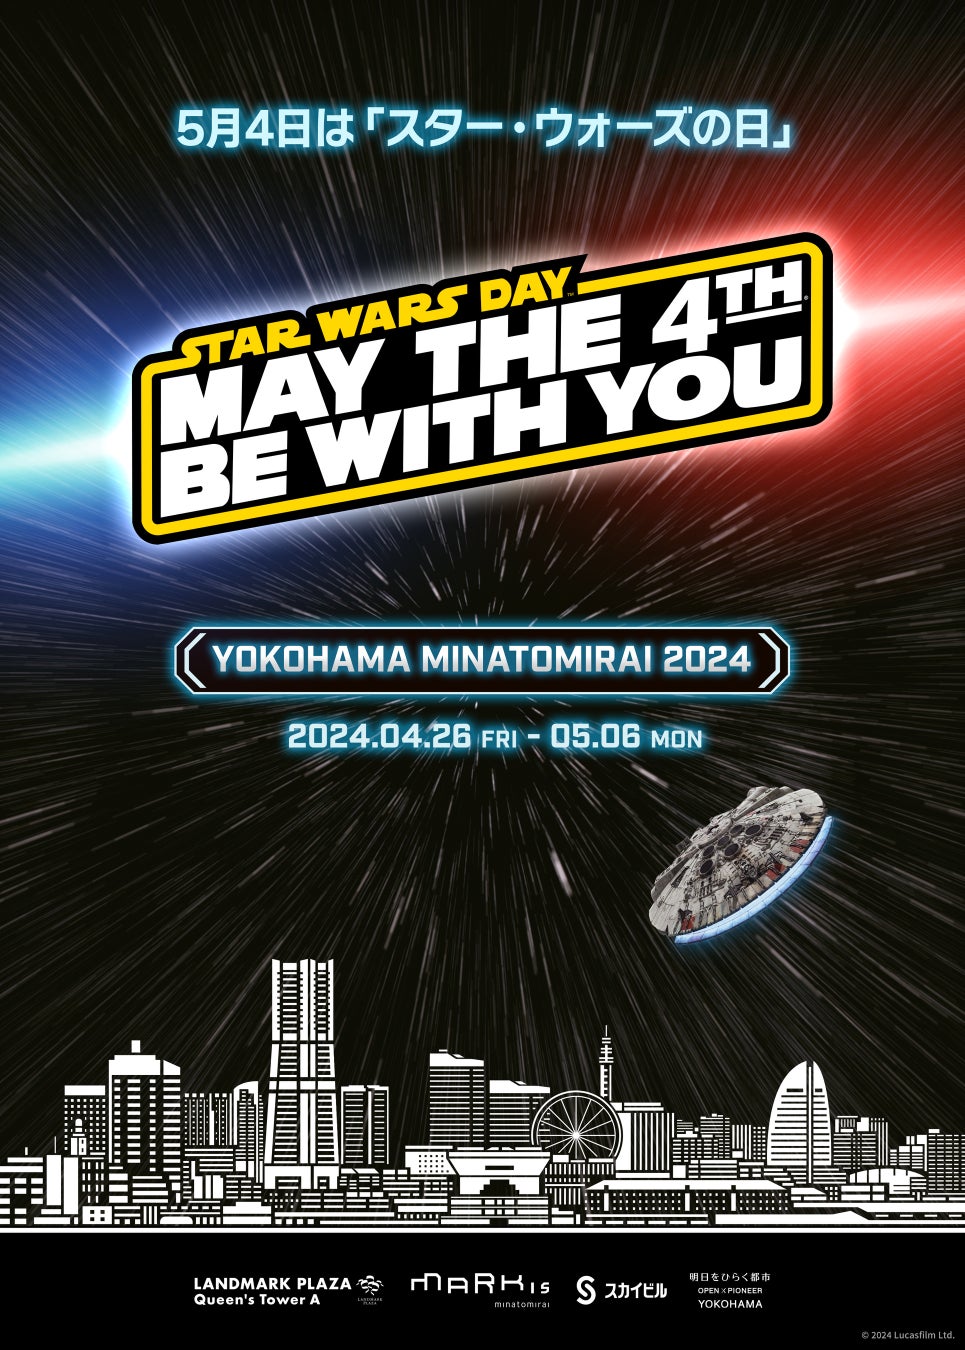 「STAR WARS DAY YOKOHAMA MINATOMIRAI 2024」 エンタメラッシュ